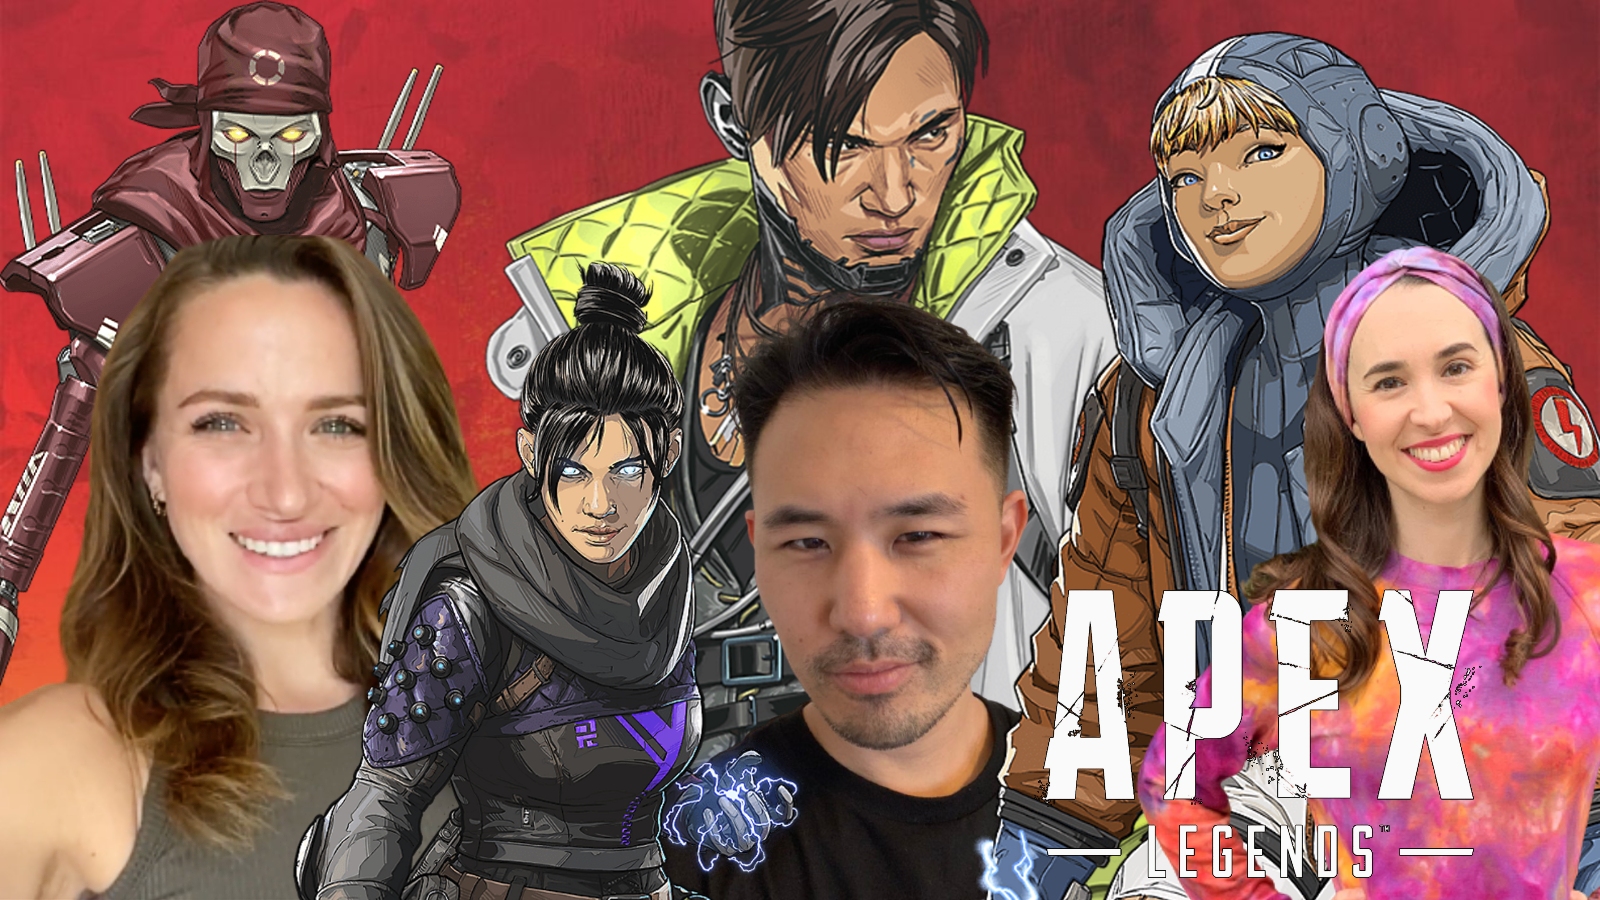 The Apex Legends TV Show: Release Date, Cast & Plot